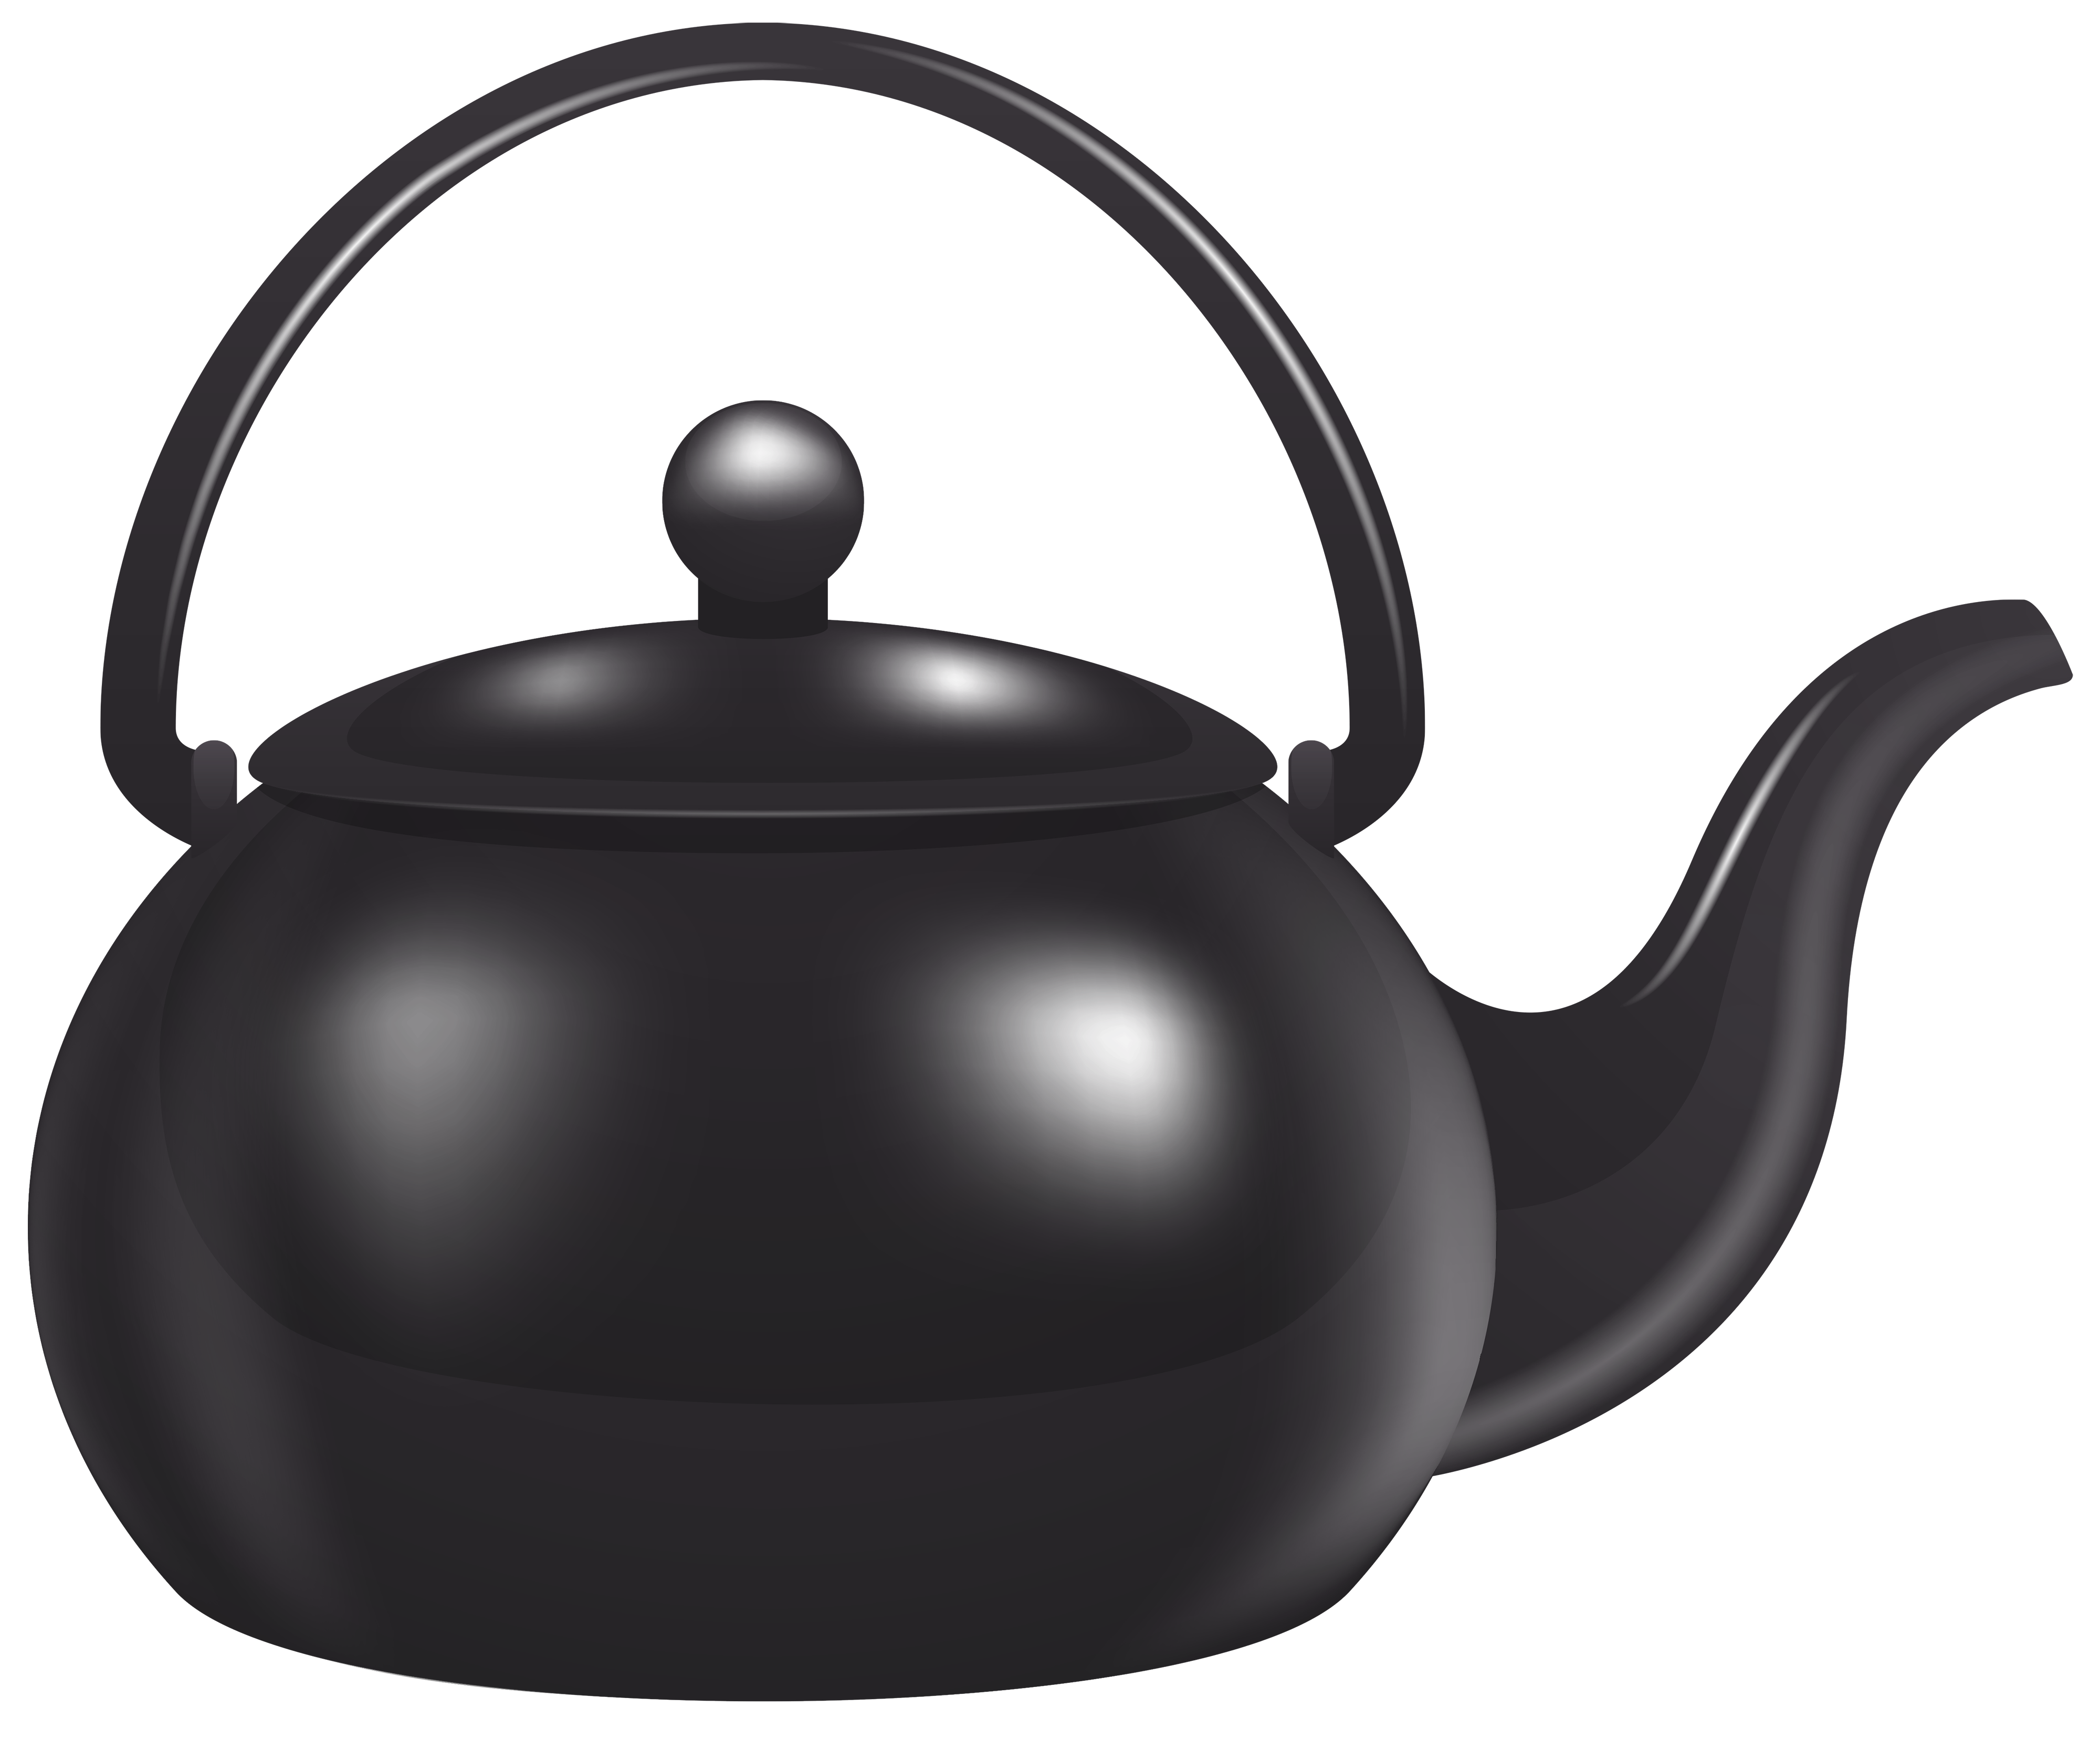 Чайник черный прозрачный. Чайник. Чайник без носика. Заварочный чайник на прозрачном фоне. Чайник без фона.